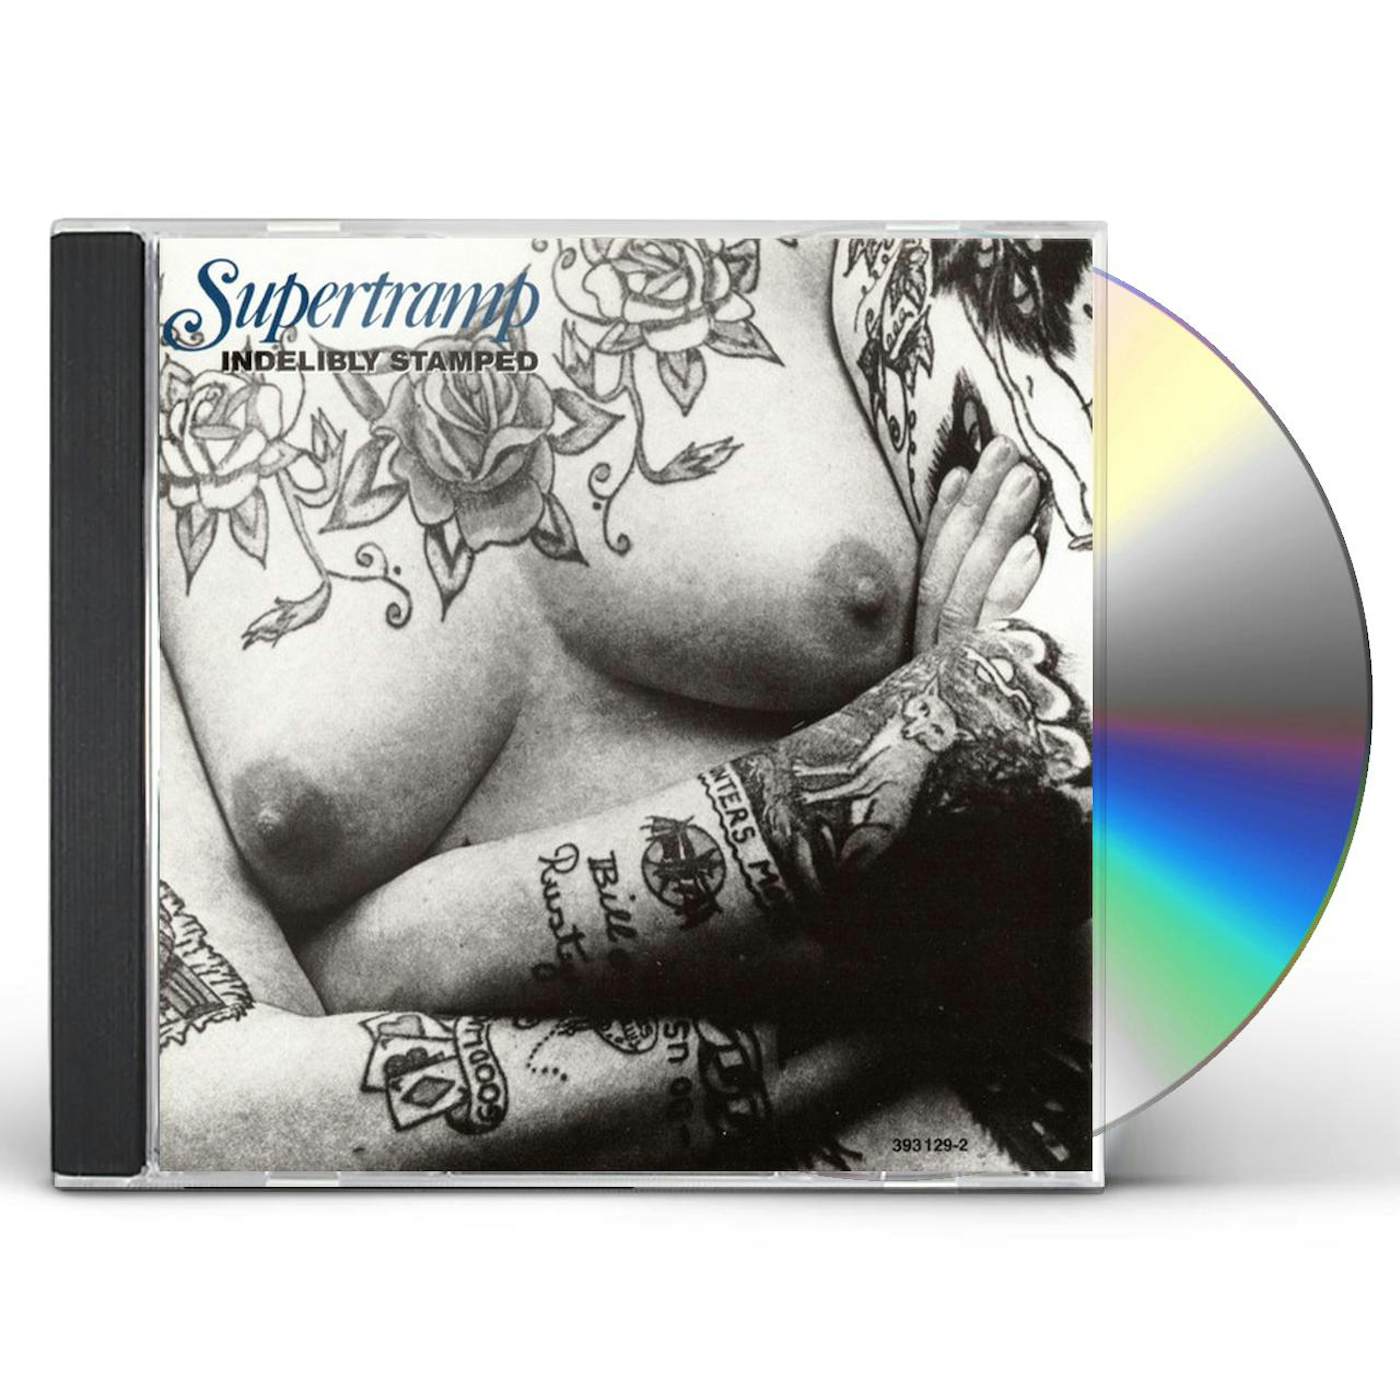 Supertramp INDELIBLY STAMPED CD